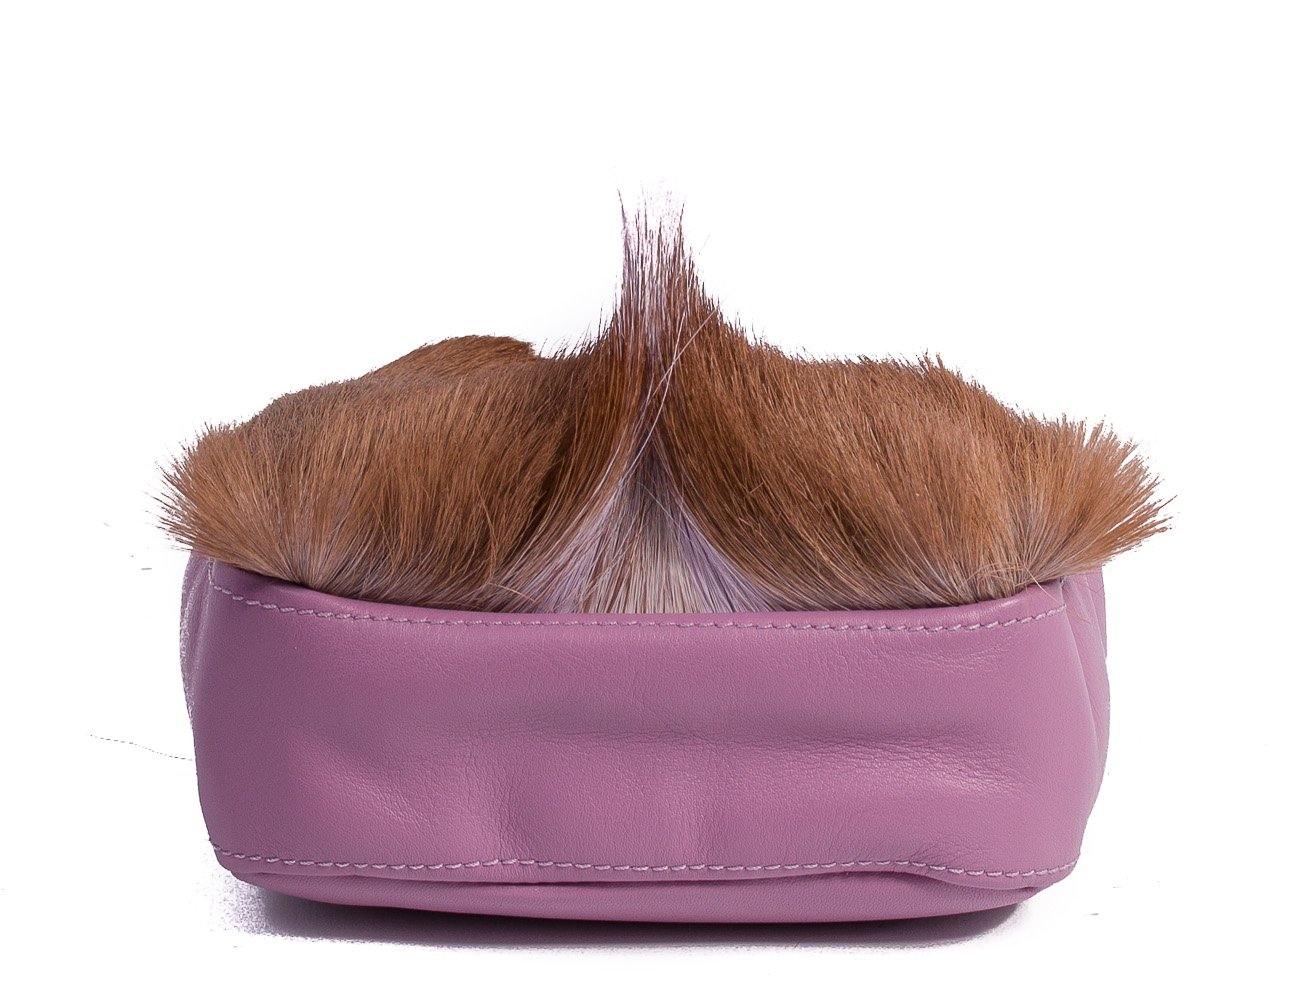 sherene melinda springbok hair-on-hide lavender leather pouch bag Fan bottom